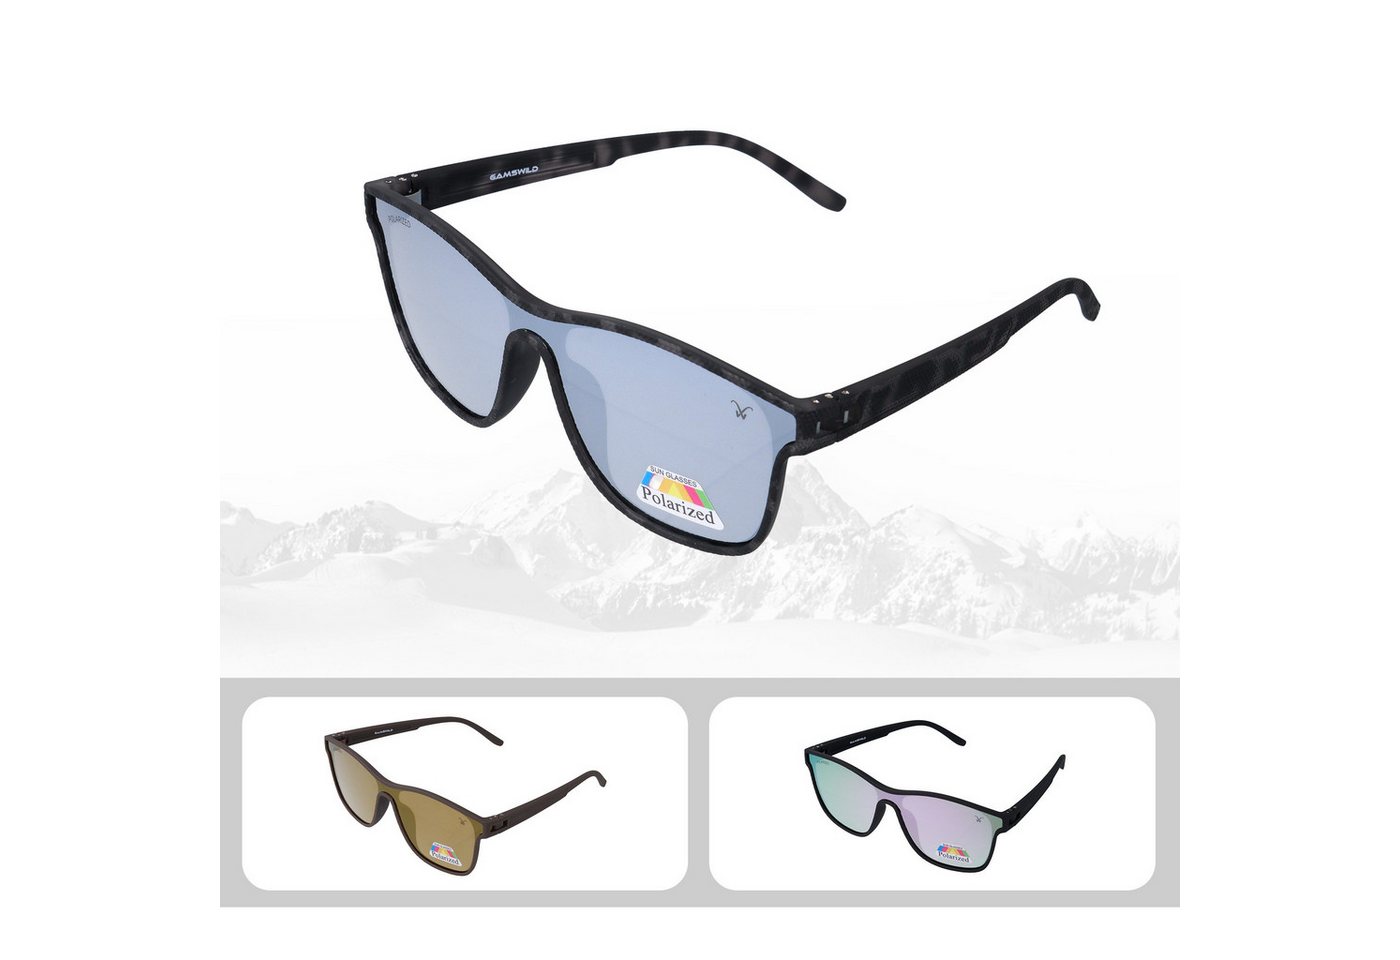 Gamswild Sonnenbrille UV400 GAMSSTYLE Modebrille Cat-Eye TR90 / polarisierte Gläser Unisex Modell WM3032 in braun, grau und silber-grau von Gamswild